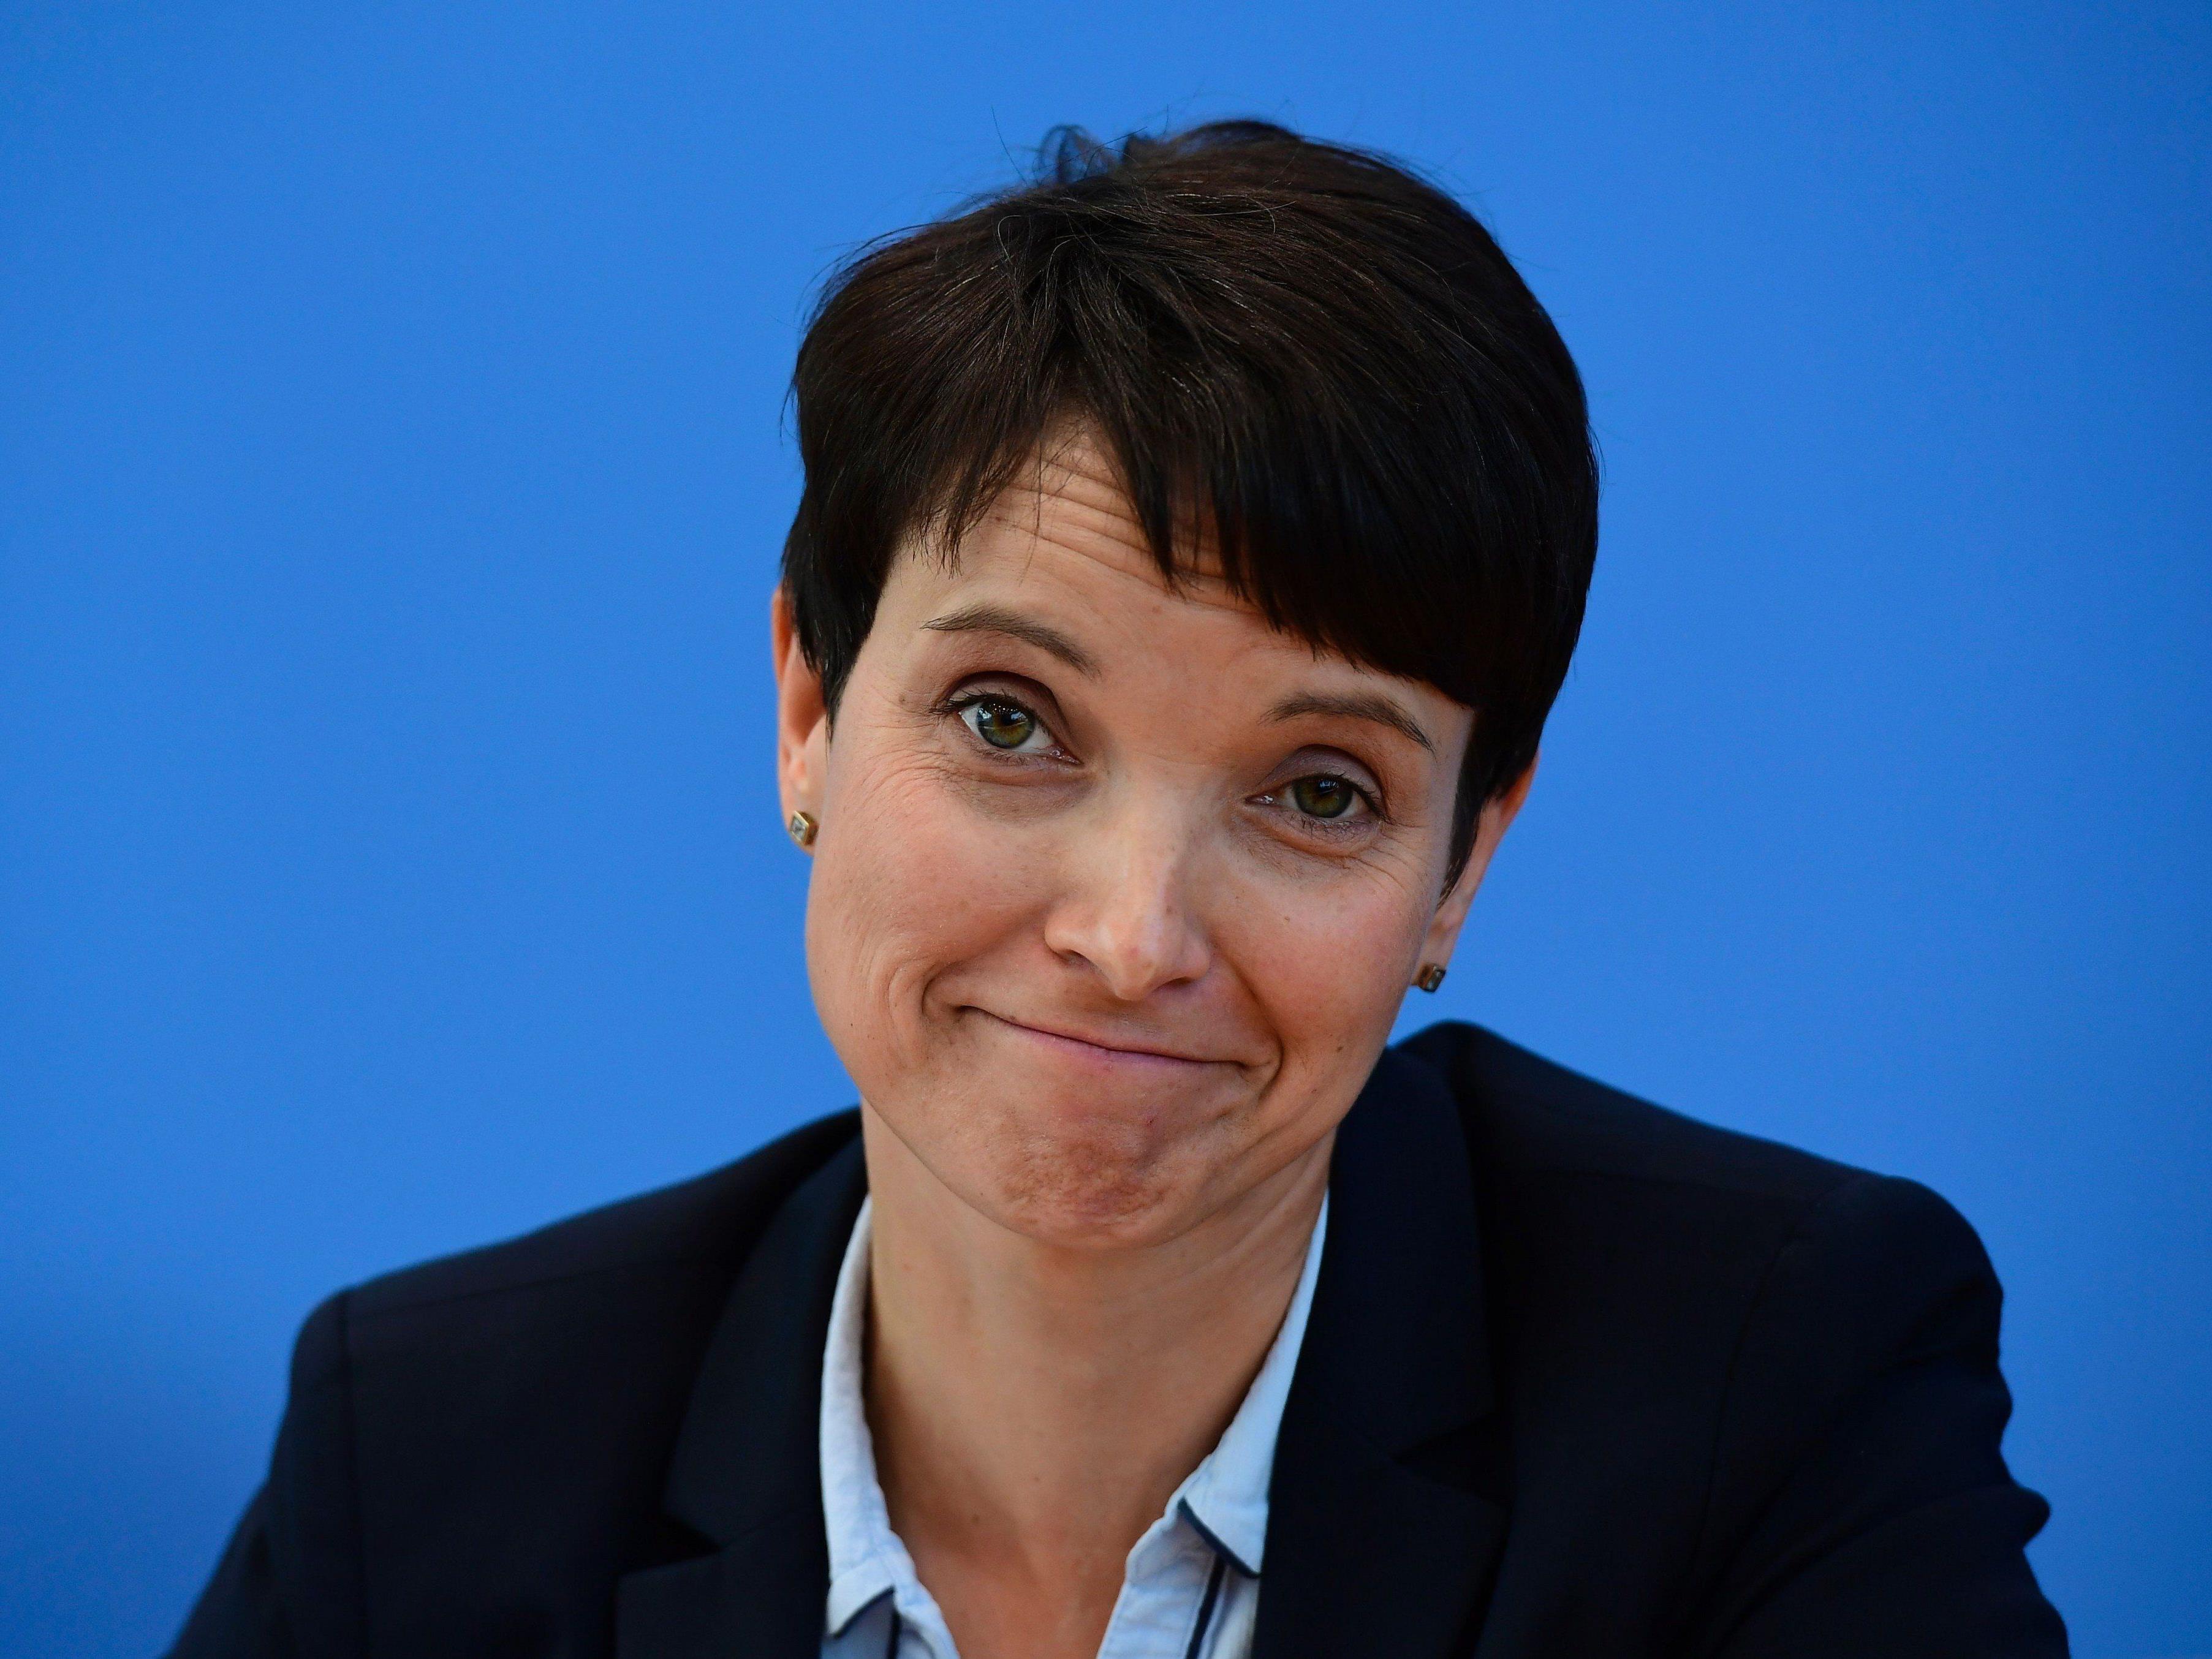 AfD-Chefin Frauke Petry bezeichnet Bernd Höcke als "Belastung für die Partei".